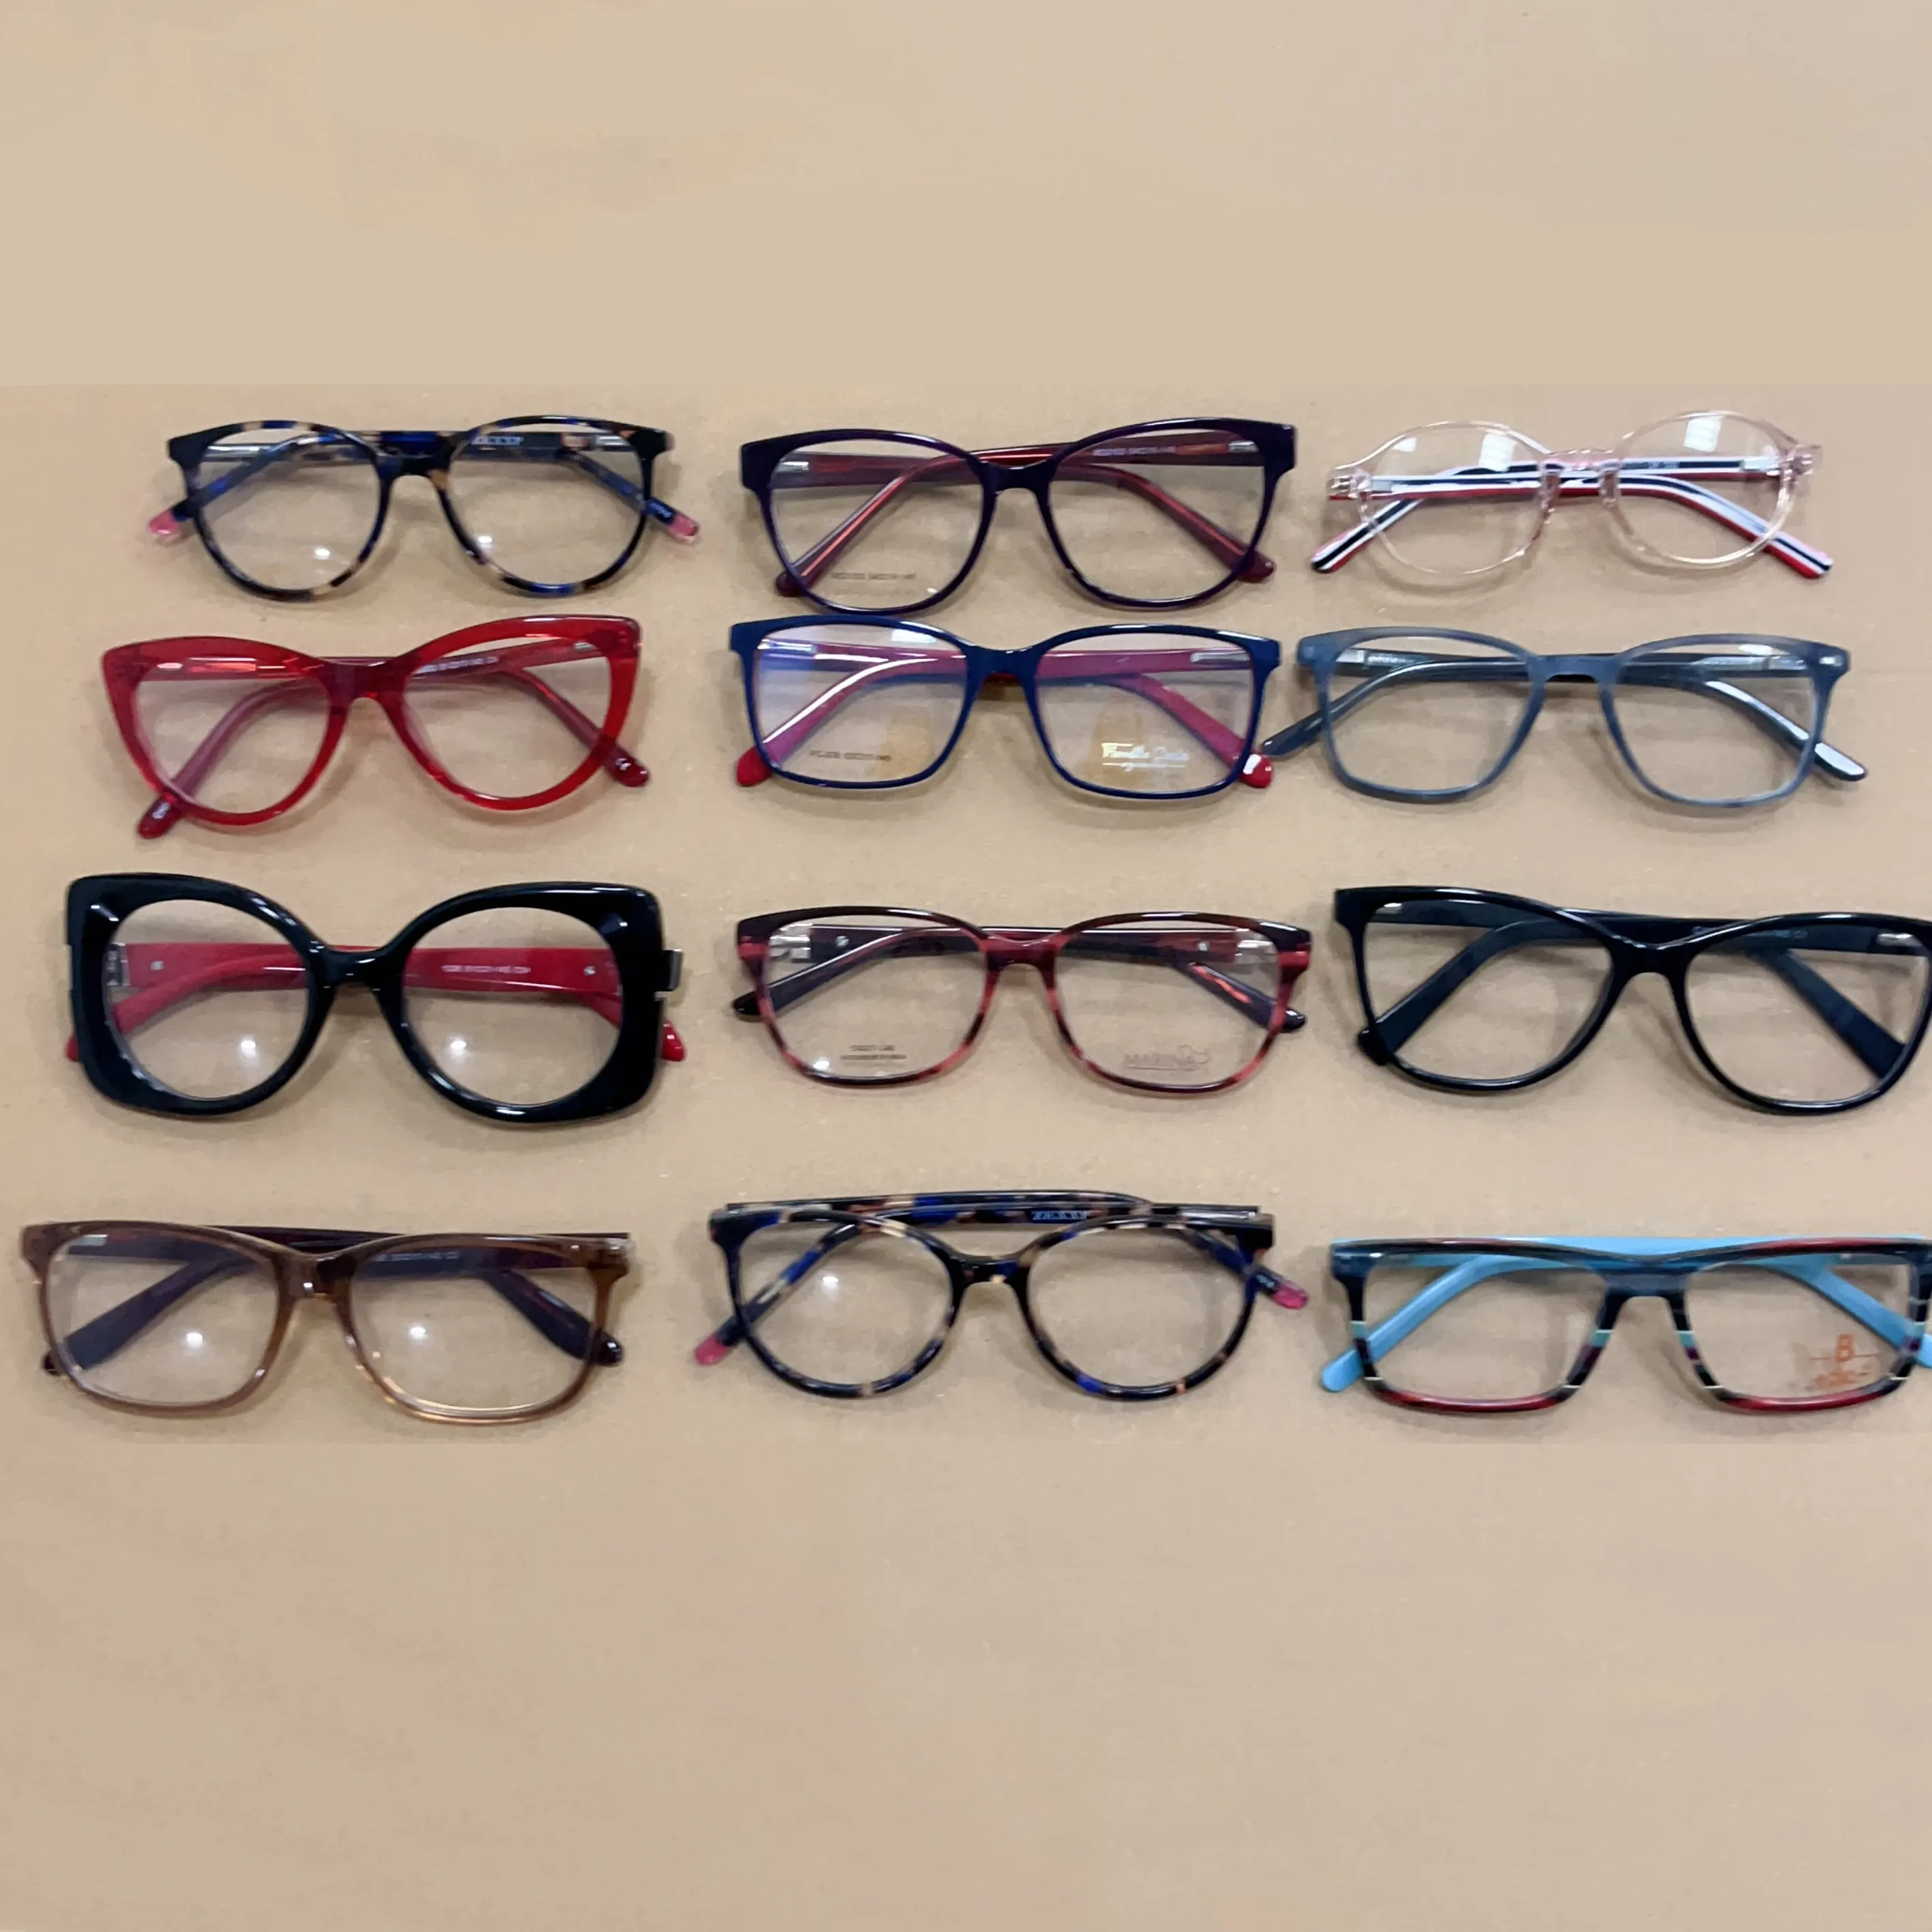 Promosi aneka stok kacamata model campuran dan warna bingkai kacamata optik asetat